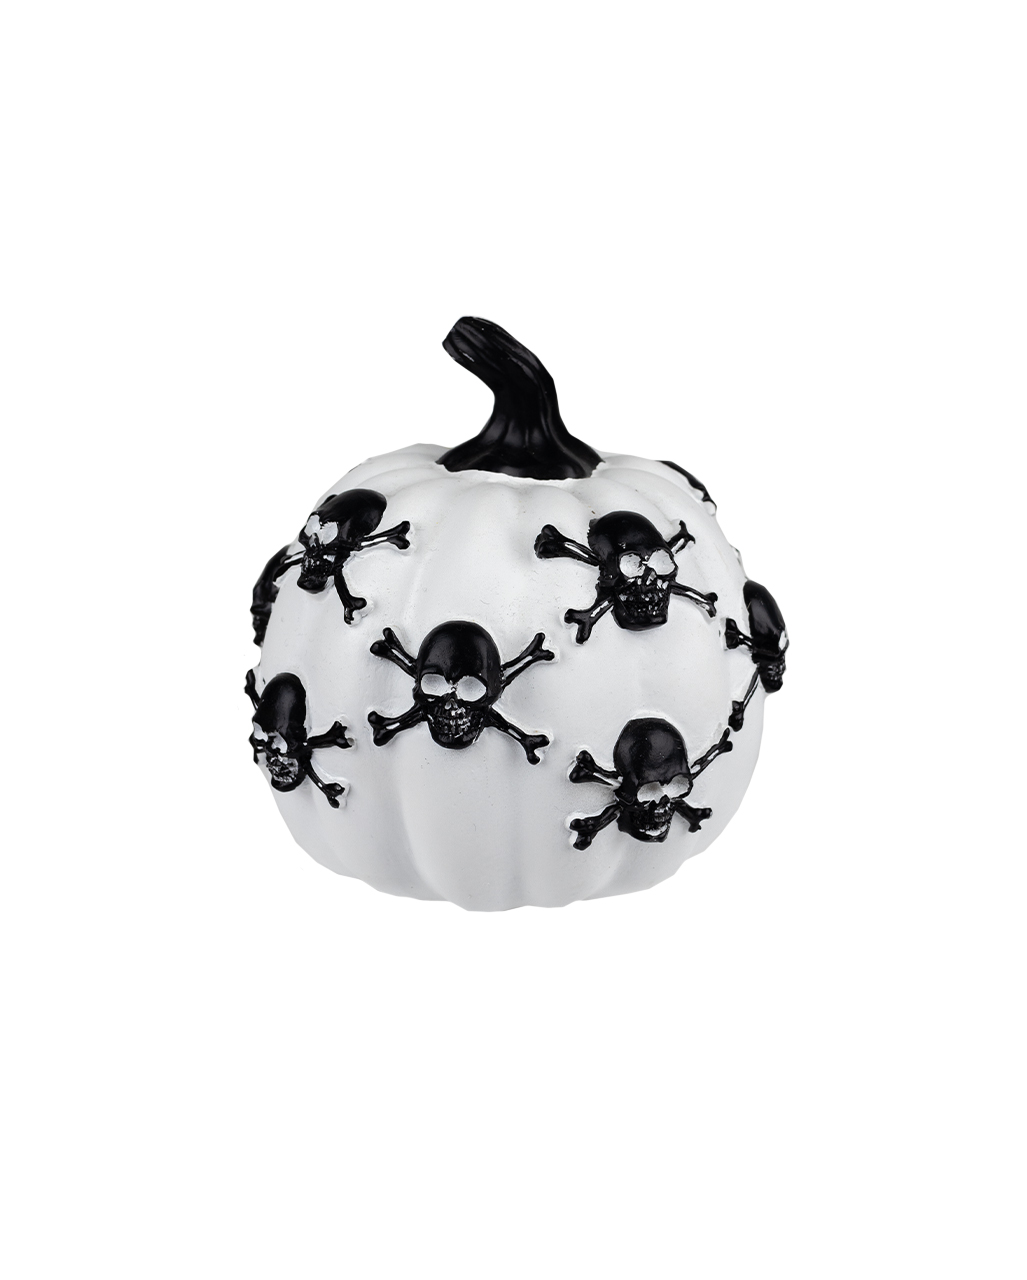 weisser kuerbis mit totenkoepfen 13cm white pumpkin with skulls halloween kuerbis deko 54696 neu 1